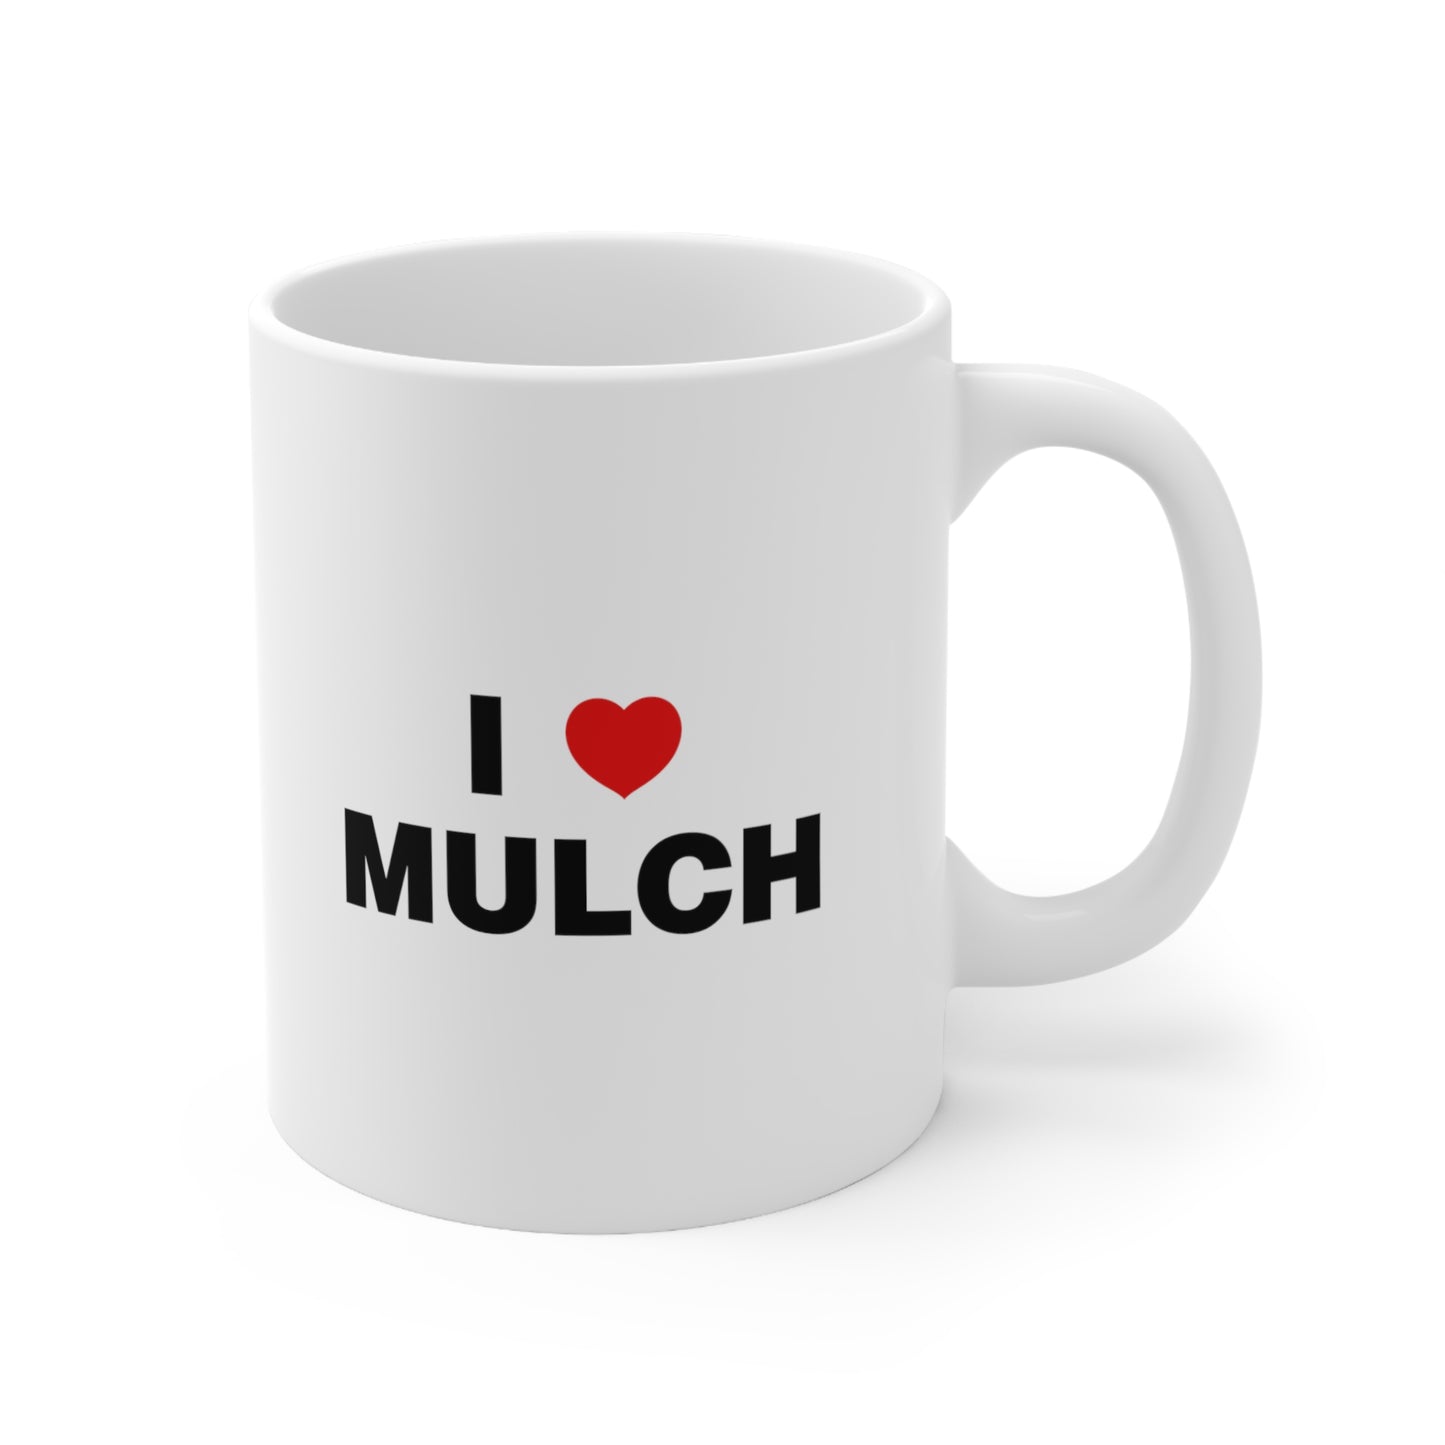 I Love Mulch Coffee Mug 11oz